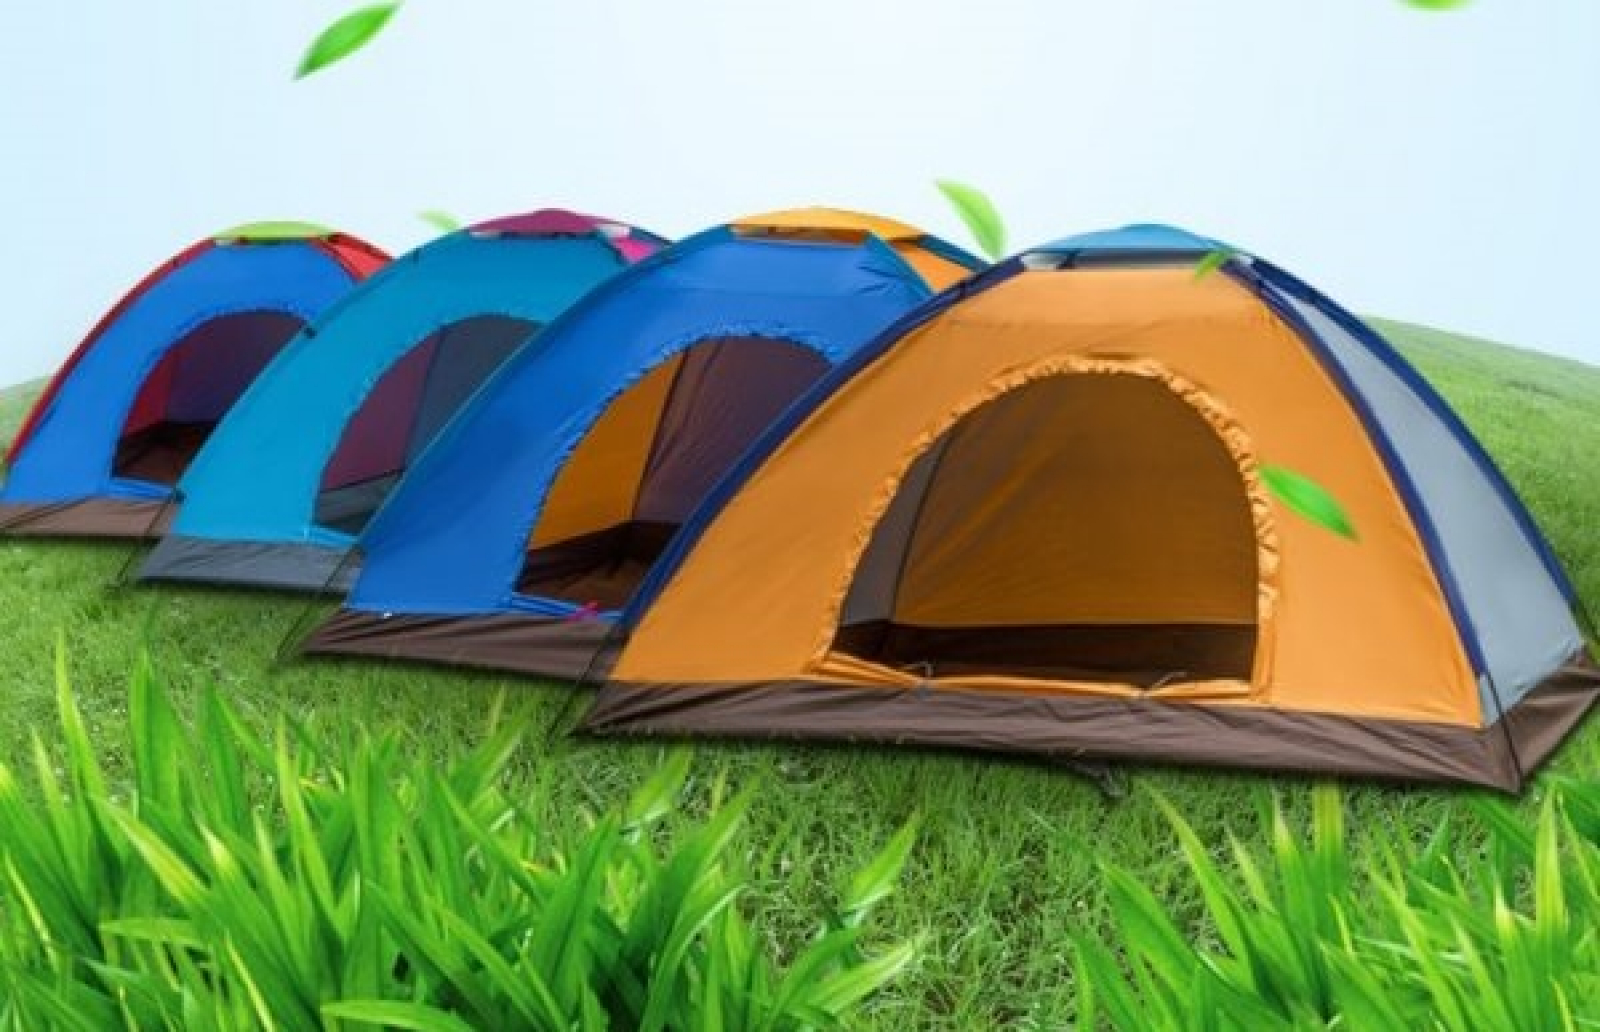 Shop bán lều cắm trại, du lịch giá rẻ tphcm